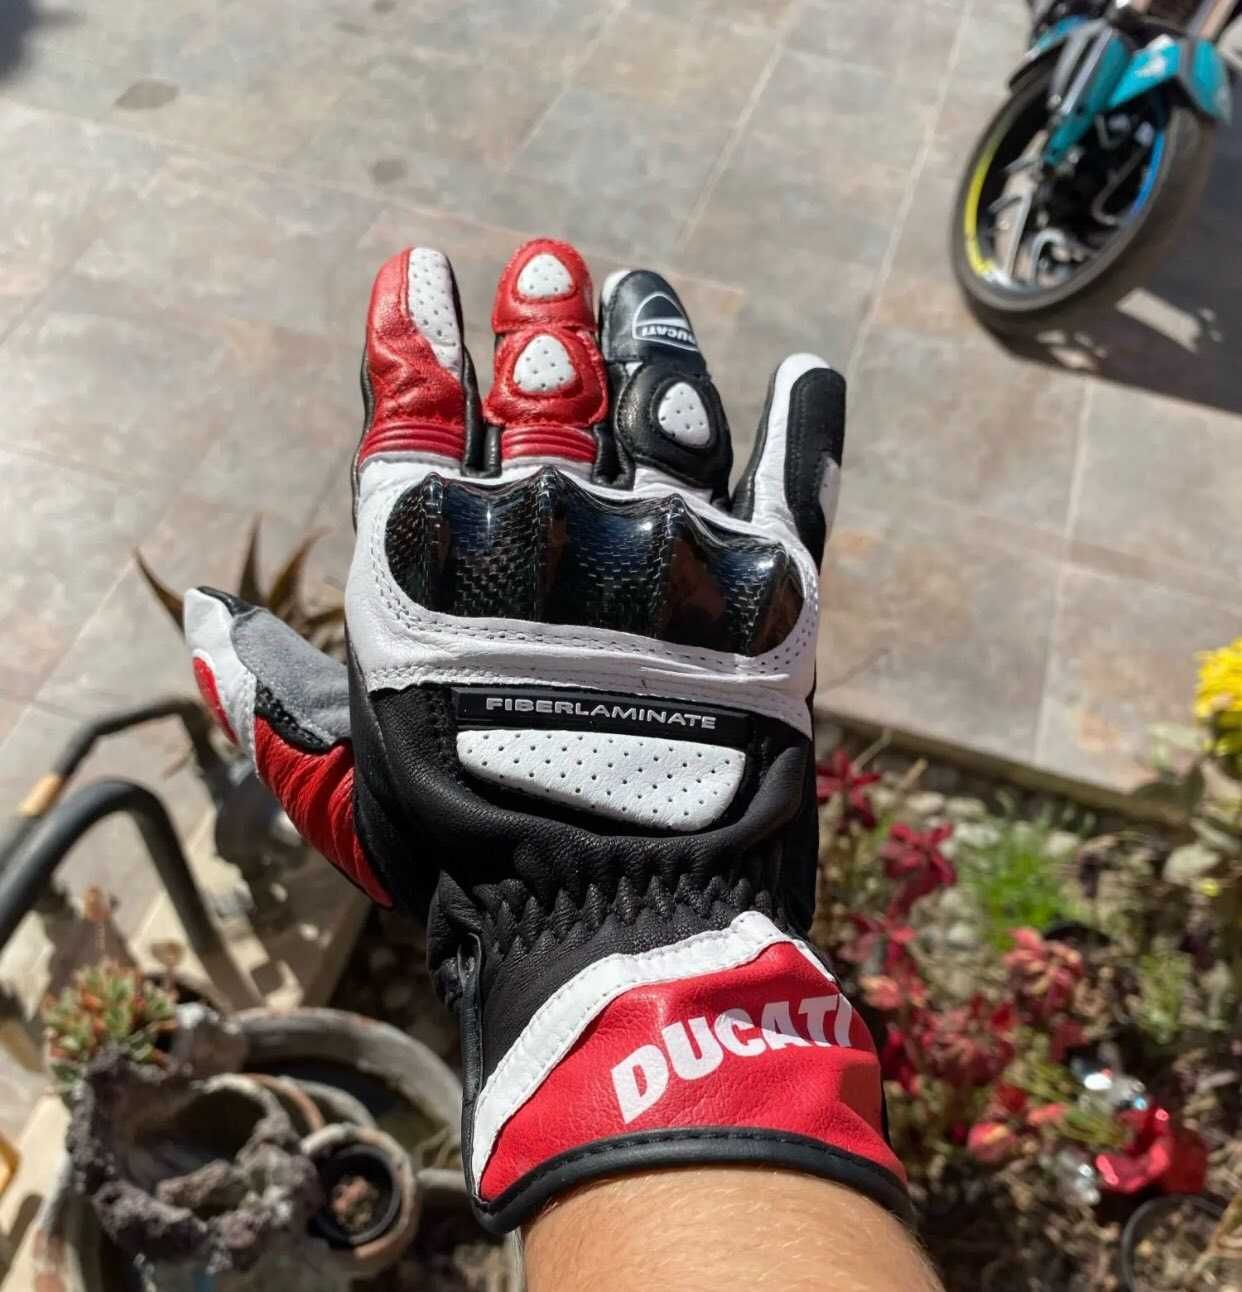 Нови! Мъжки/Дамски 4 сезонни кожени мото ръкавици с протектори Ducati